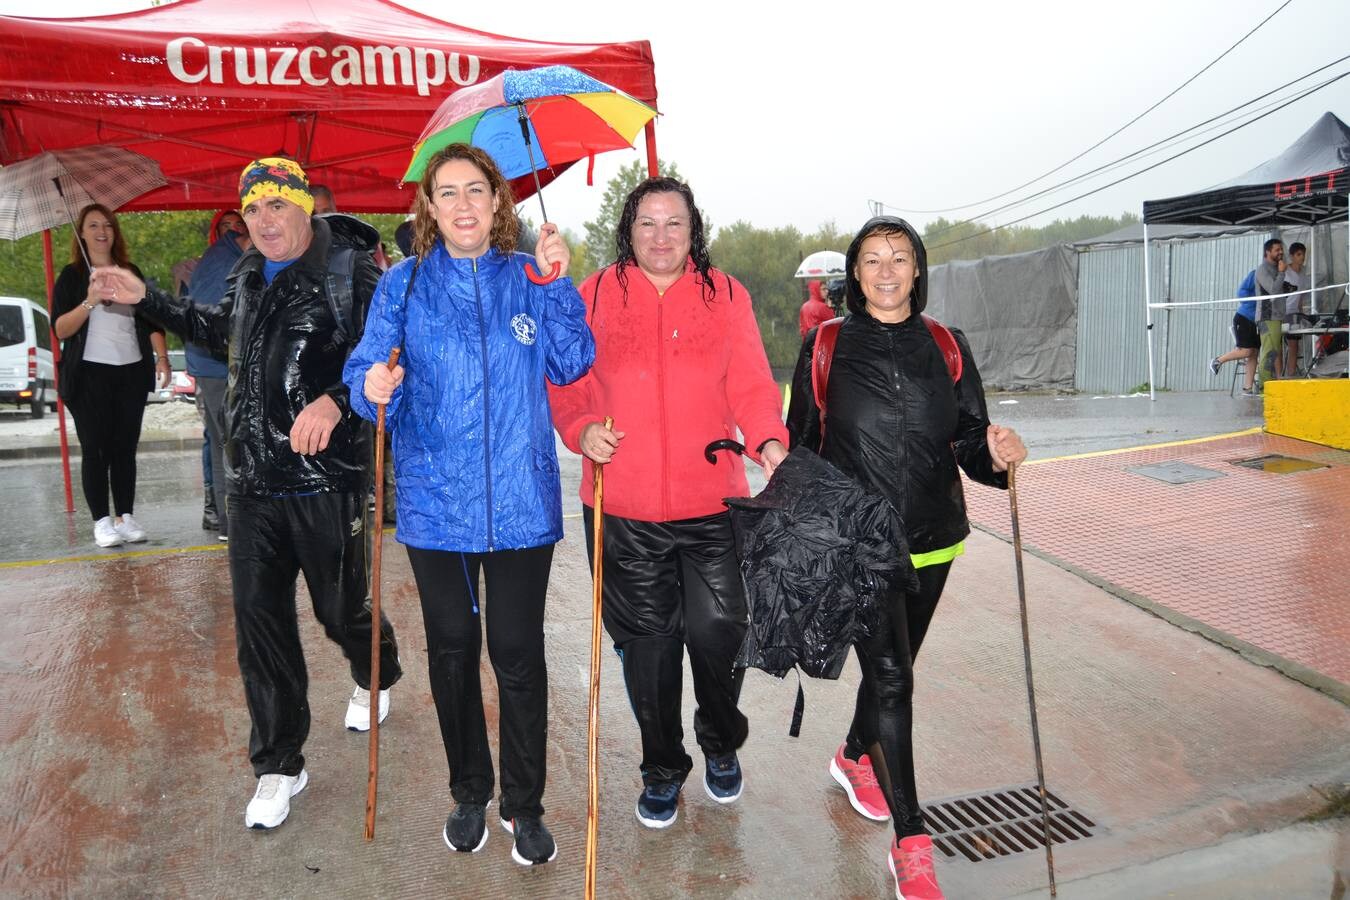 En torno a 120 personas, entre corredores de la trail, minitrail y ruta senderista participaron en la mañana del domingo en esta prueba que estuvo marcada por la intensa lluvia